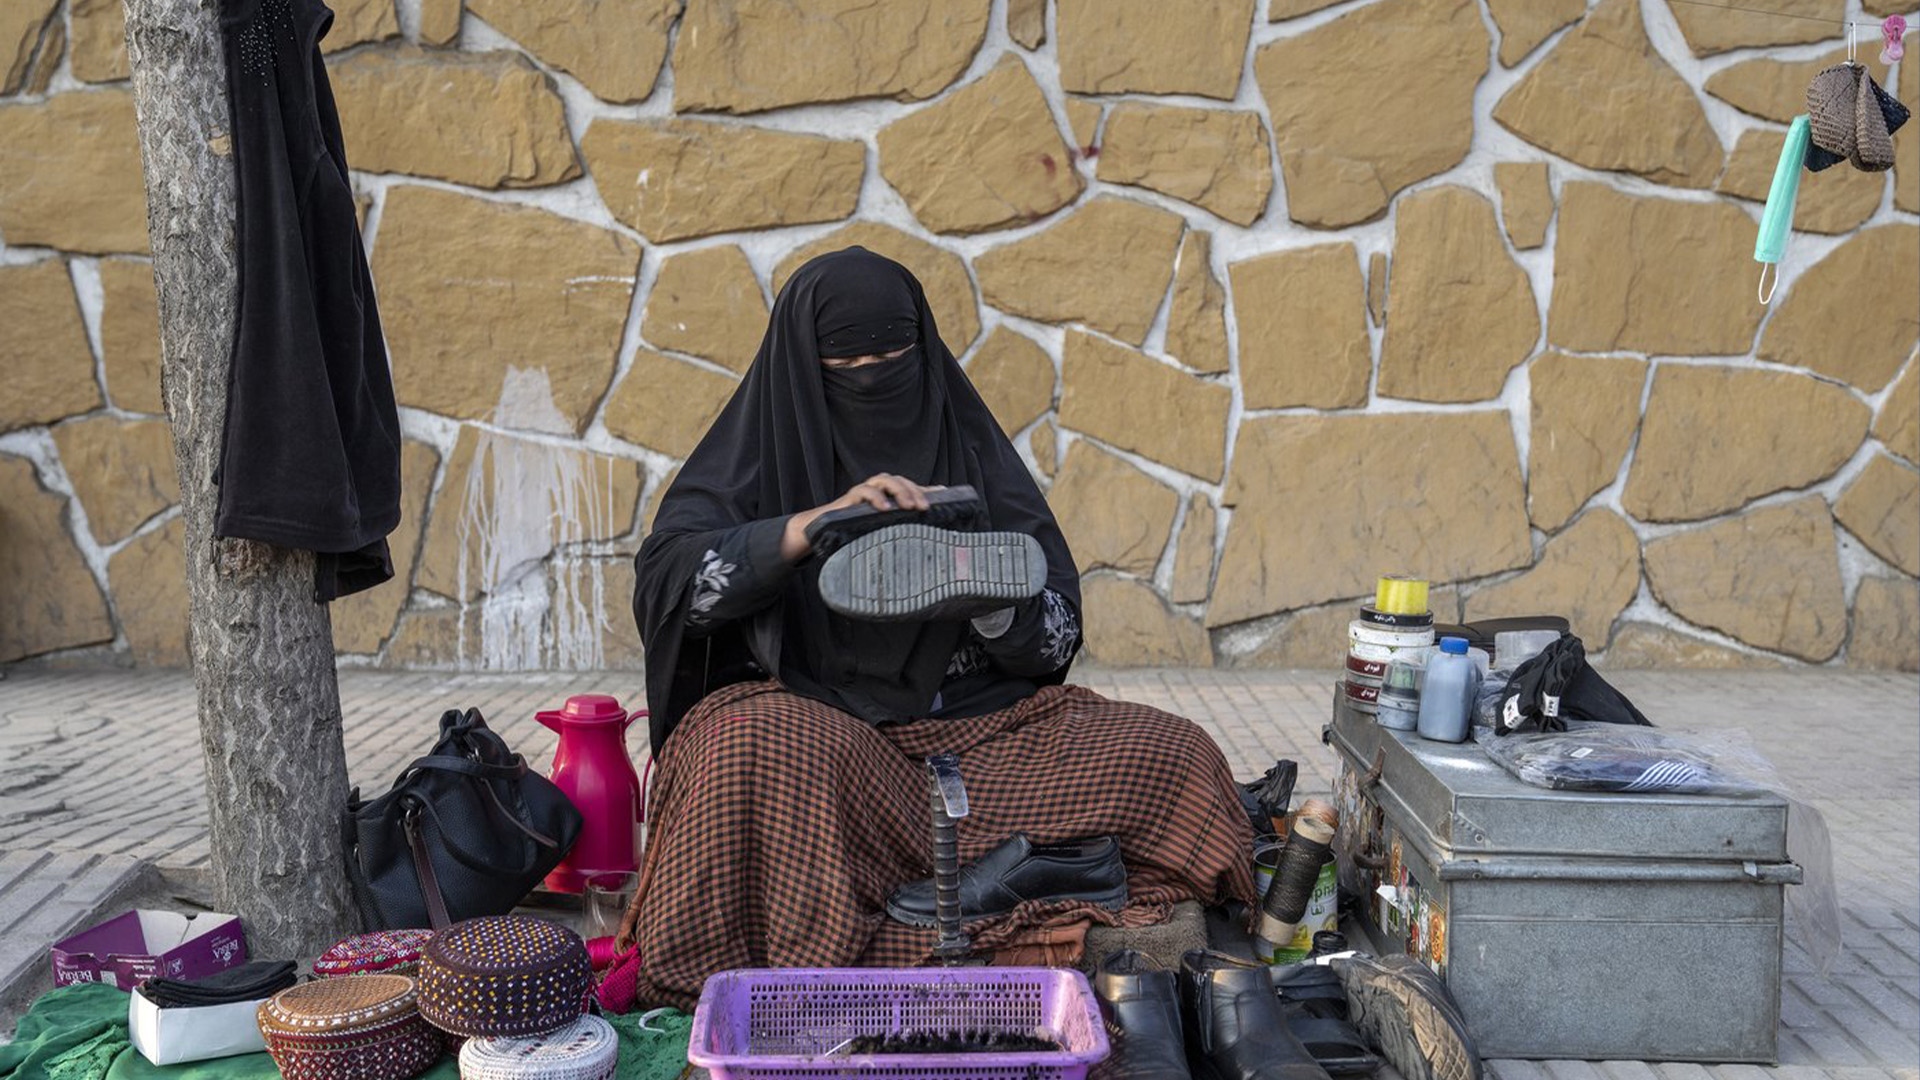 Une femme afghane nettoie les chaussures des clients dans une rue de Kaboul, en Afghanistan, le dimanche 5 mars 2023. Après l'arrivée au pouvoir des talibans en Afghanistan, les femmes ont été privées de bon nombre de leurs droits fondamentaux.